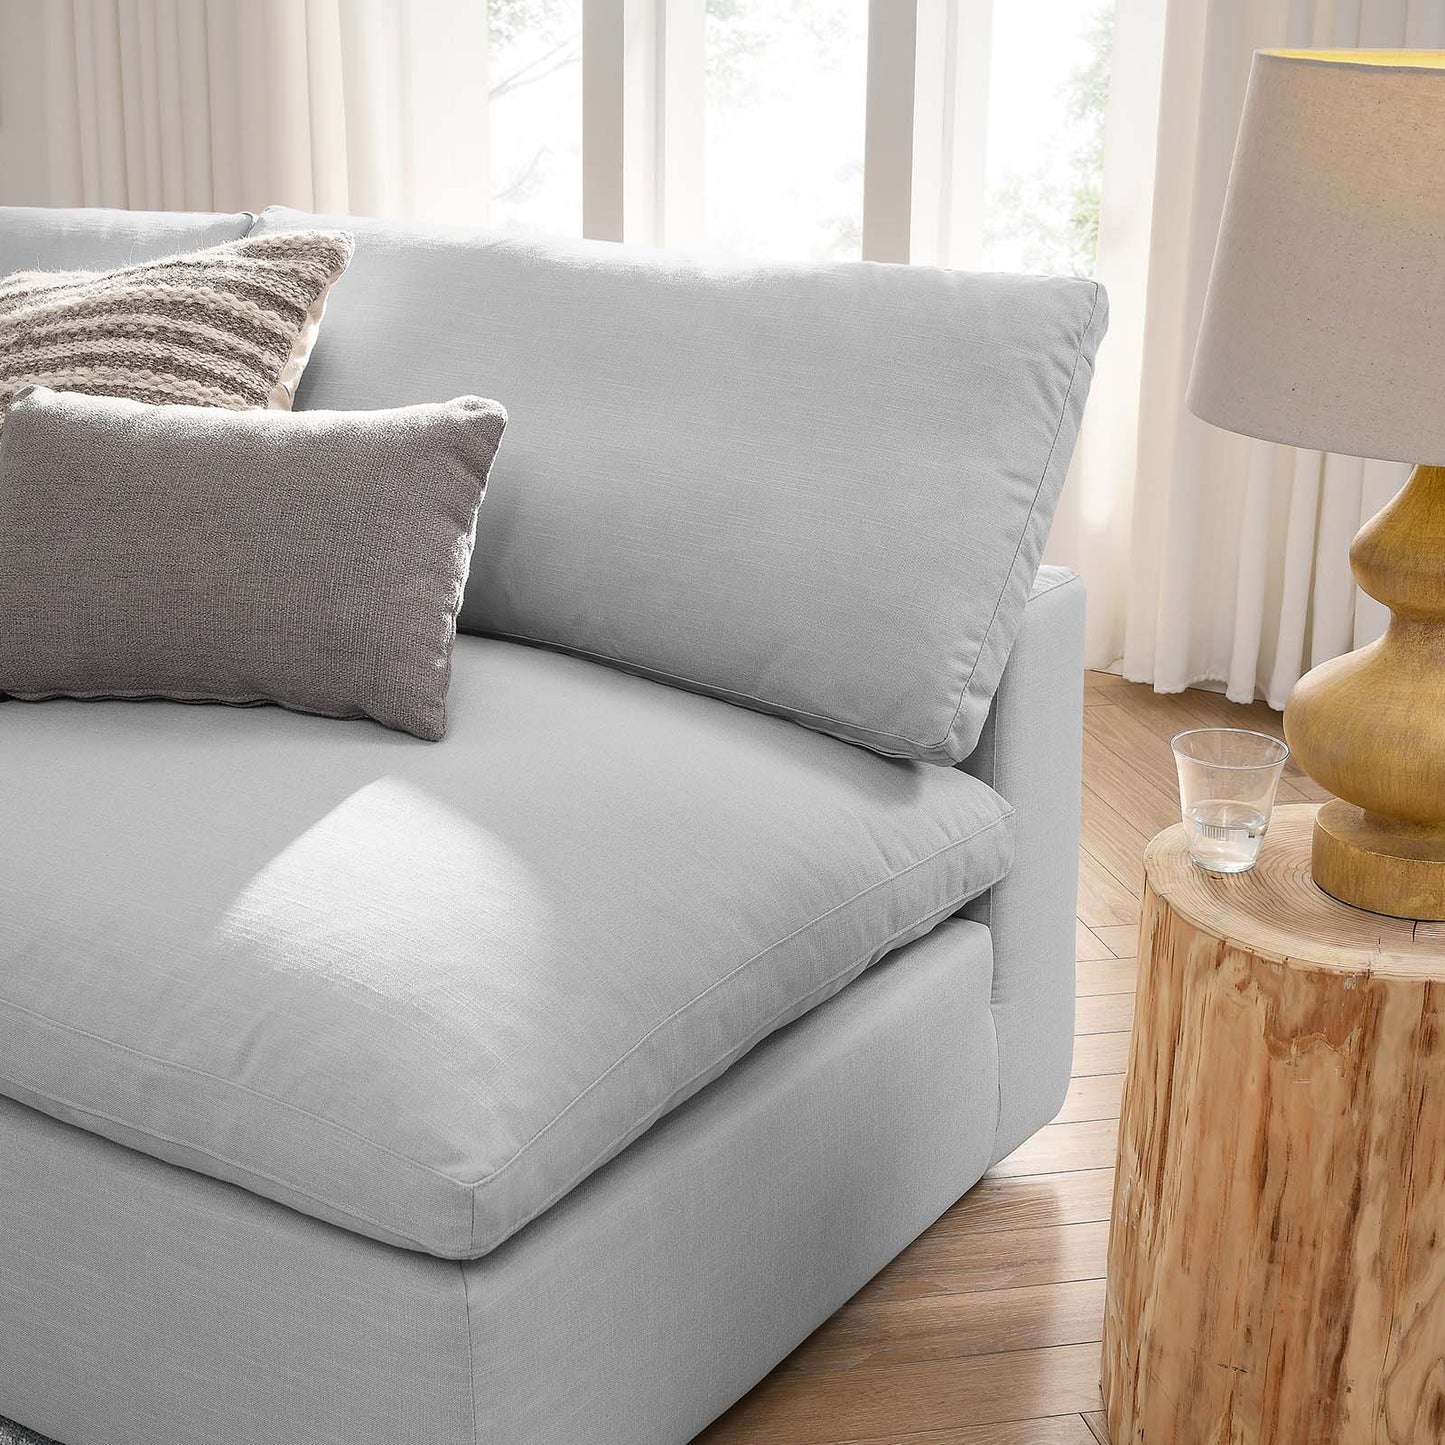 Commix Down Filled Overstuffed 5-Piece Armless Sectional Sofa Light Gray EEI-3360-LGR